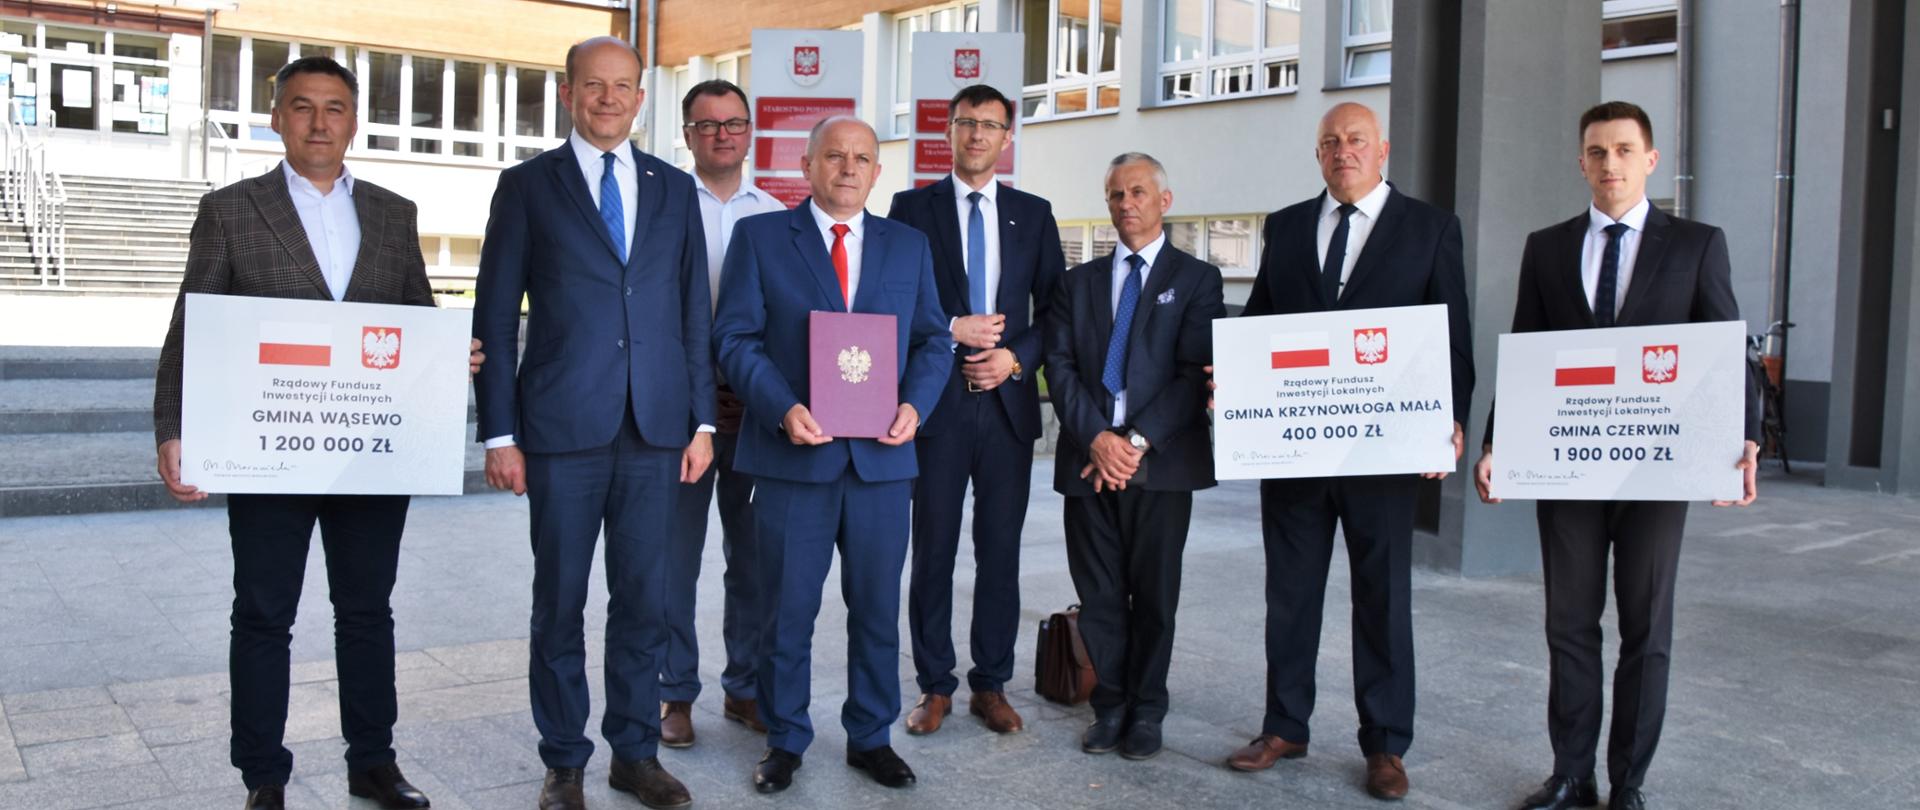 Na zdjęciu znajduje się 8 elegancko ubranych mężczyzn. Większość z nich trzyma w rękach symboliczne promesy ze środkami wsparcia finansowego z Rządowego Funduszu Inwestycji Lokalnych. 